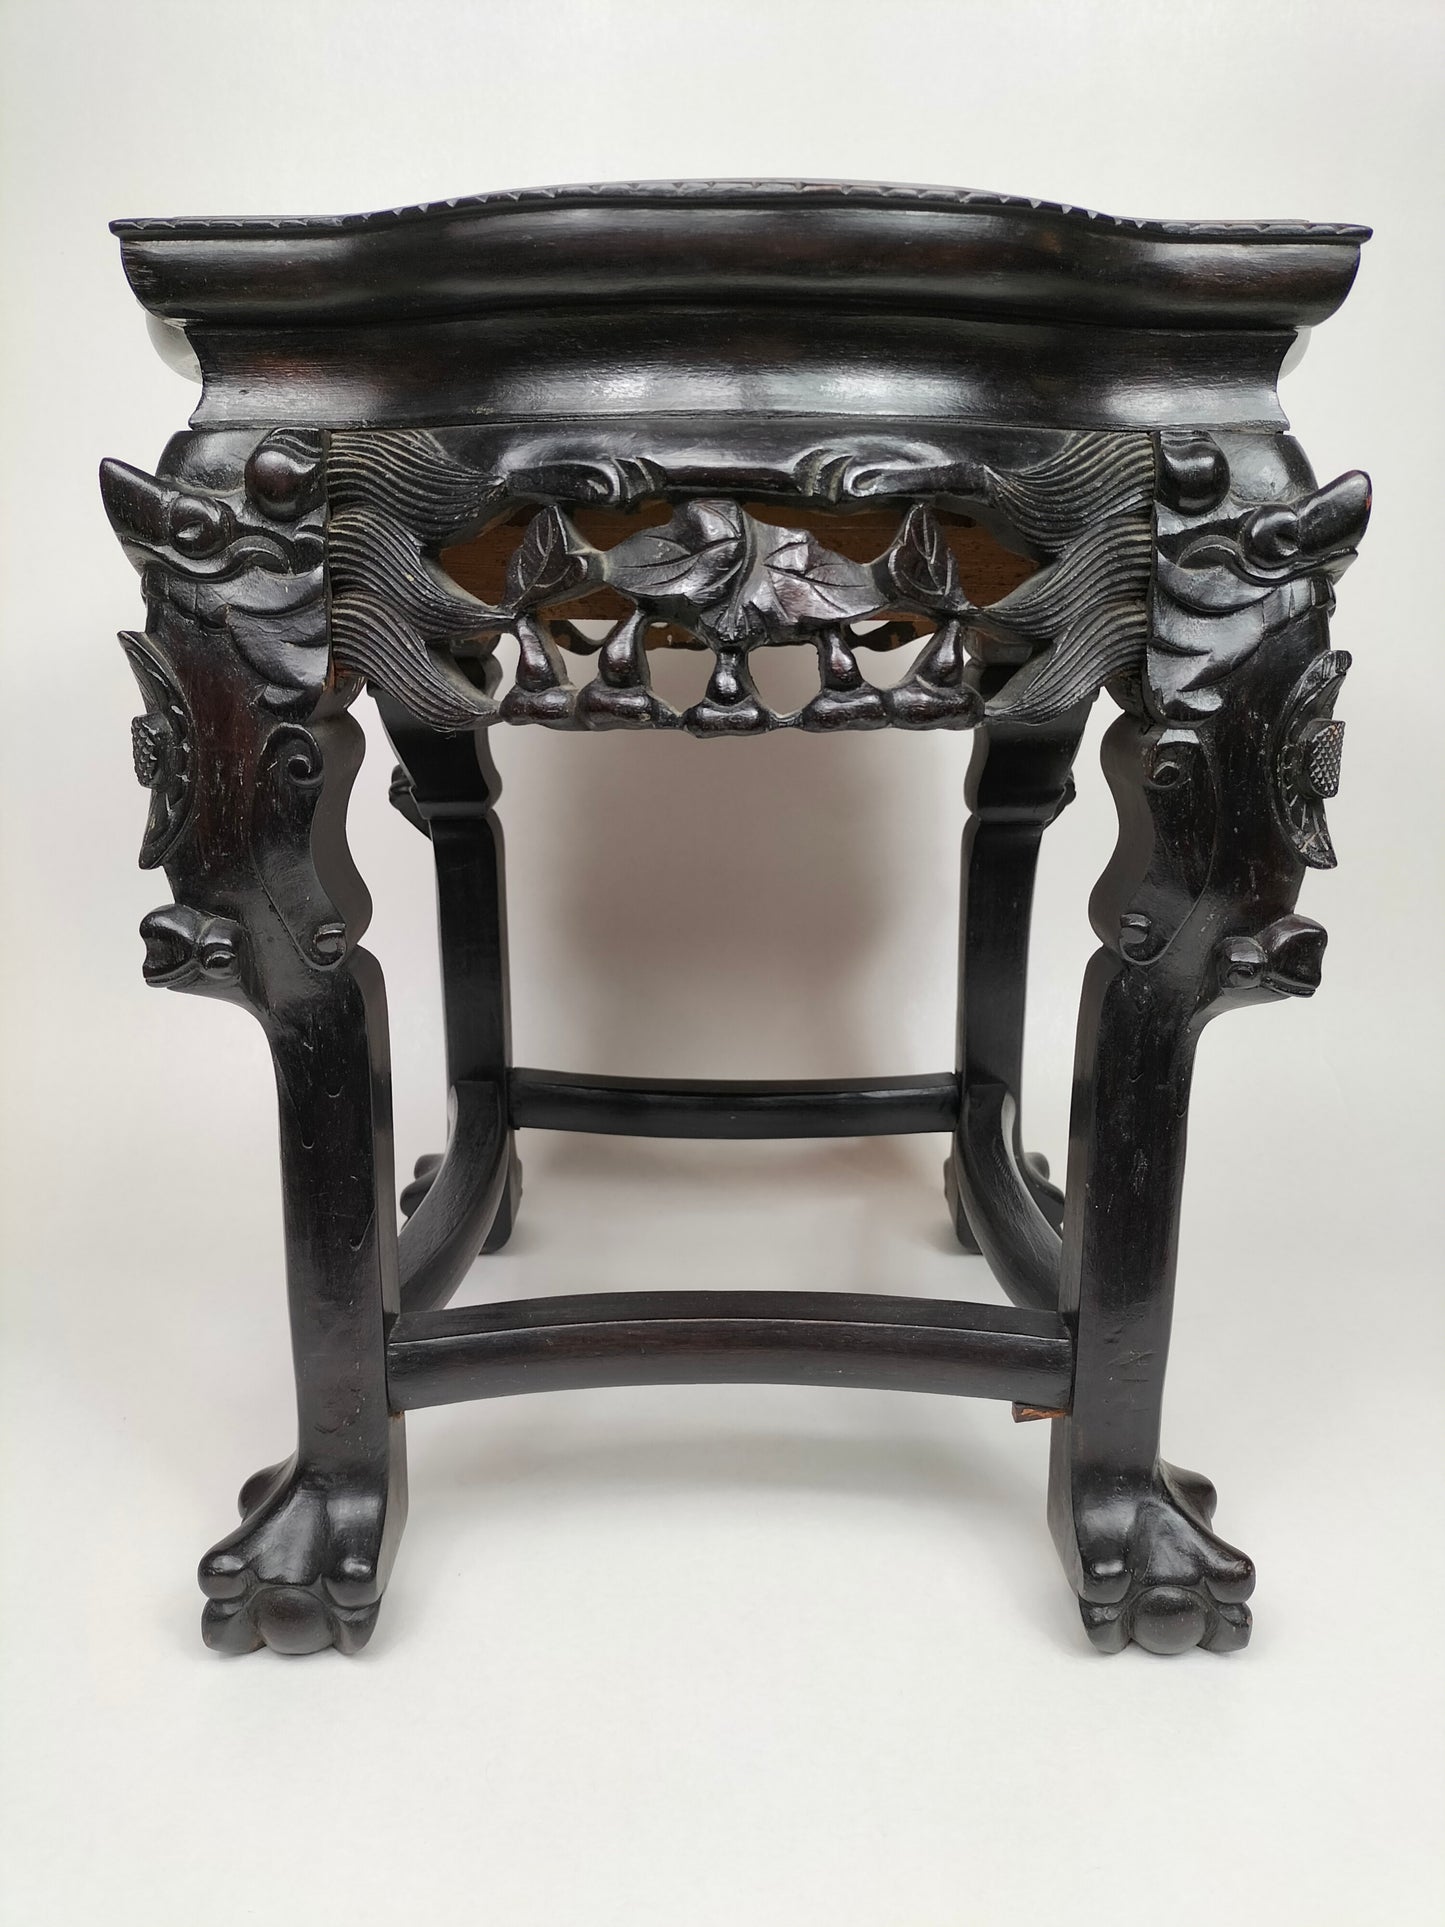 Ancienne table d'appoint chinoise incrustée d'un plateau en marbre // Début du XXe siècle